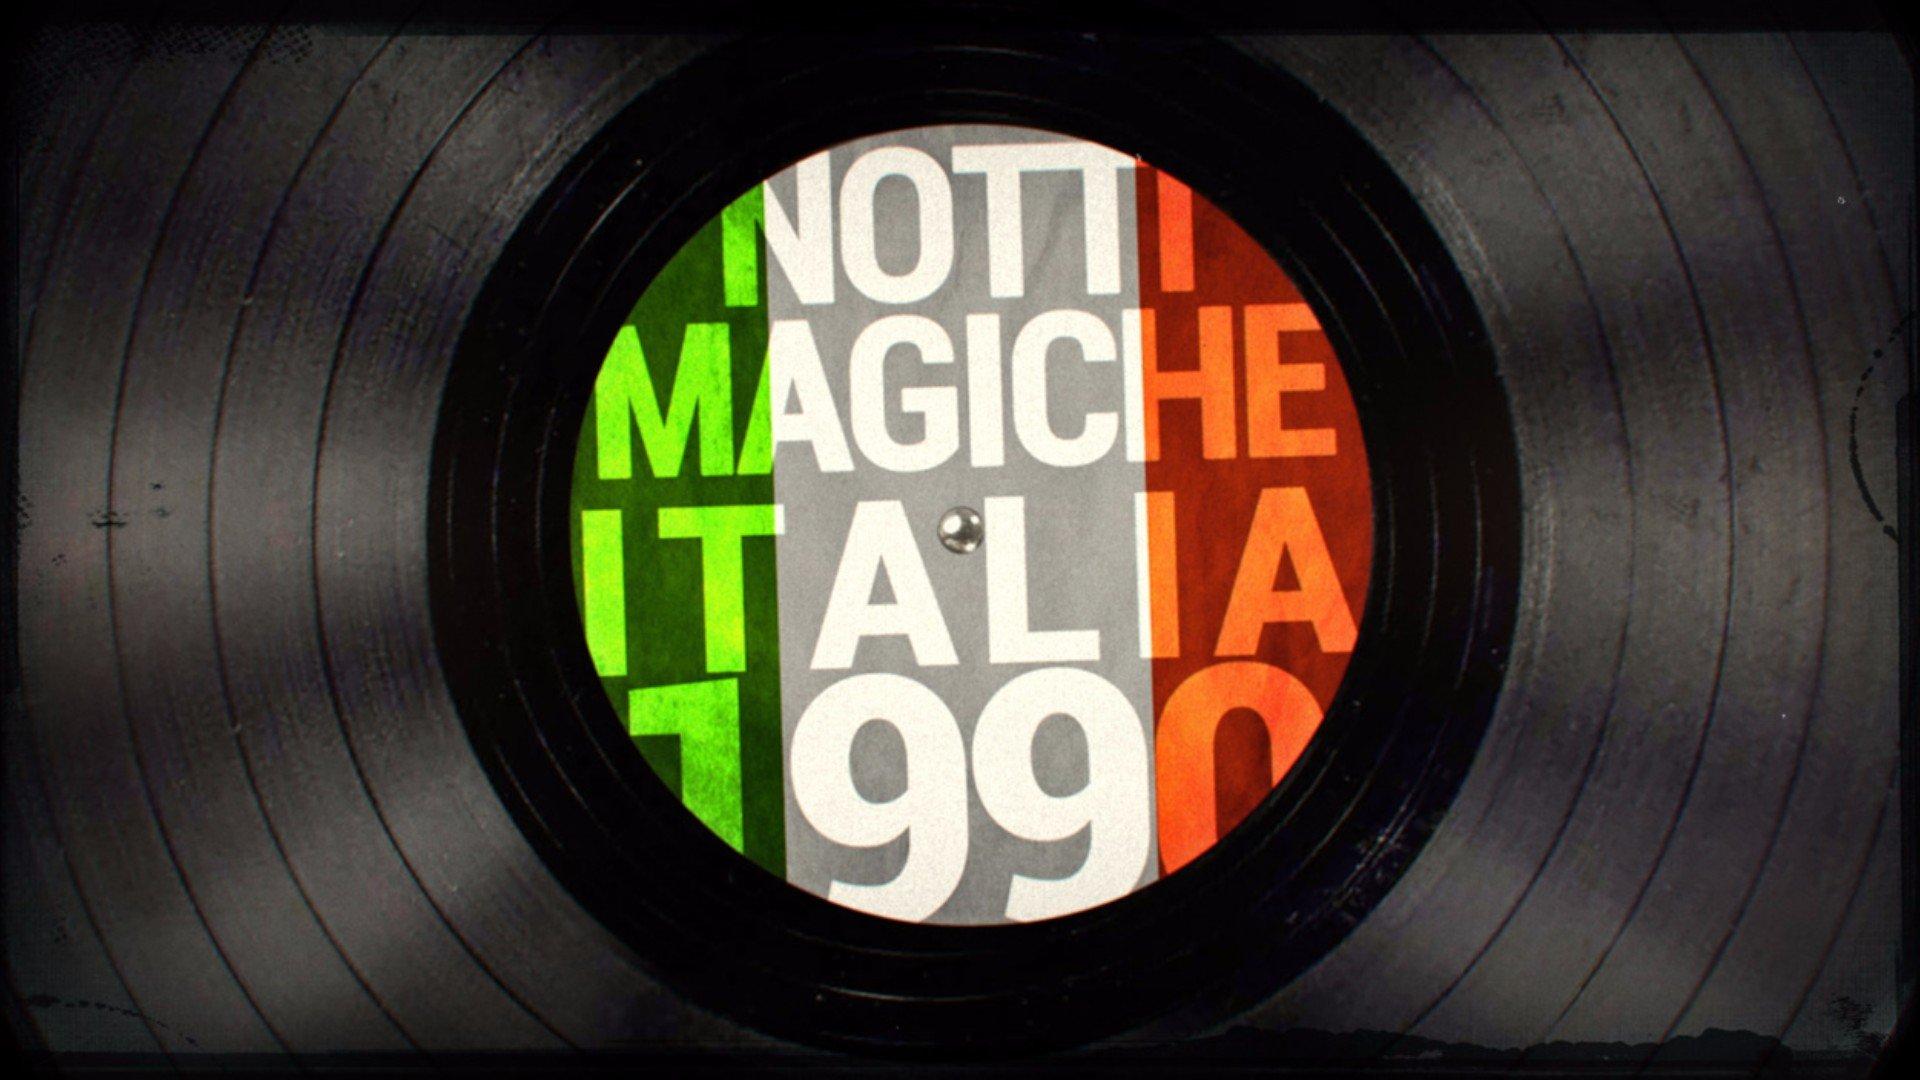 Notti Magiche (1990)